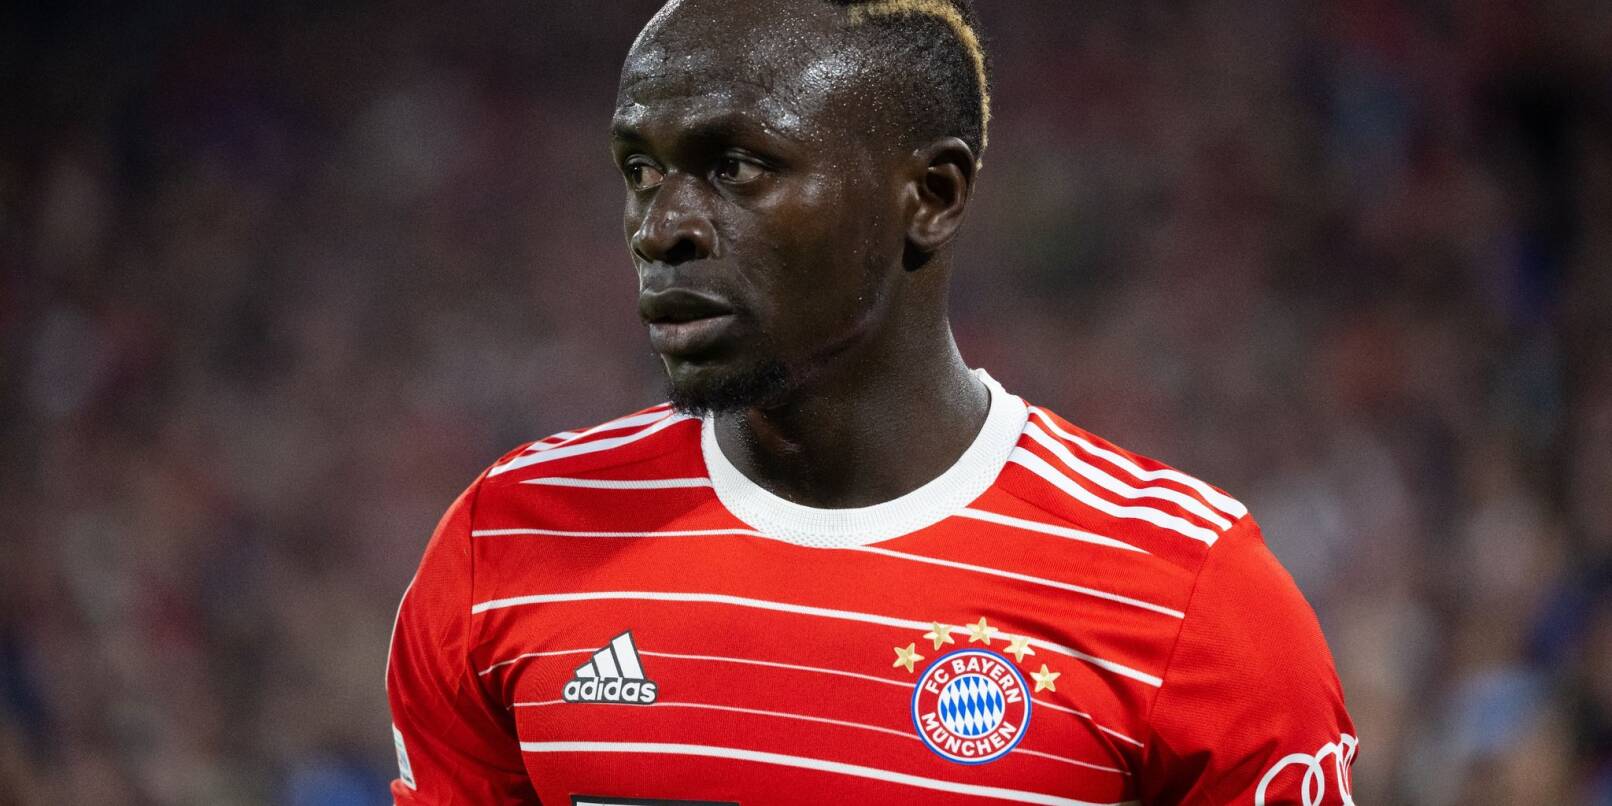 Wechselt nach nur einem Jahr beim FC Bayern München nach Saudi-Arabien: Sadio Mané.